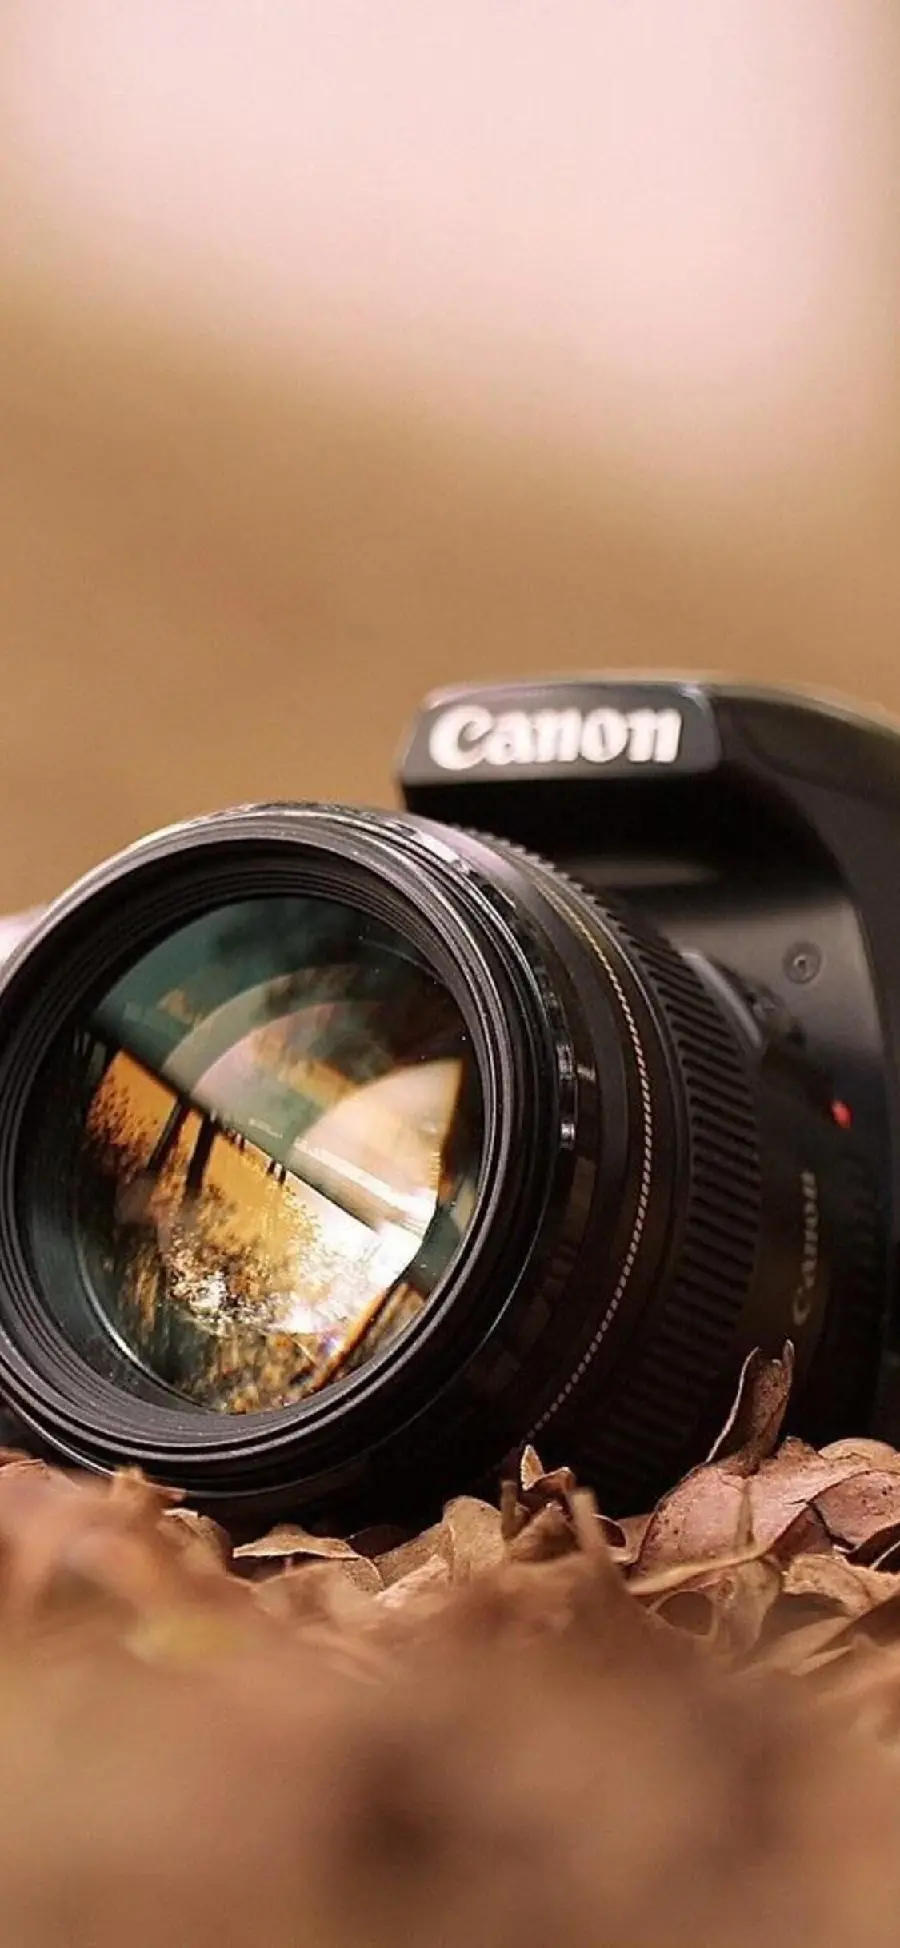 کاغذدیواری دوربین های میرورلس حرفه ای Canon مناسب فیلمبرداری و تولید محتوا به صورت ویدیویی 